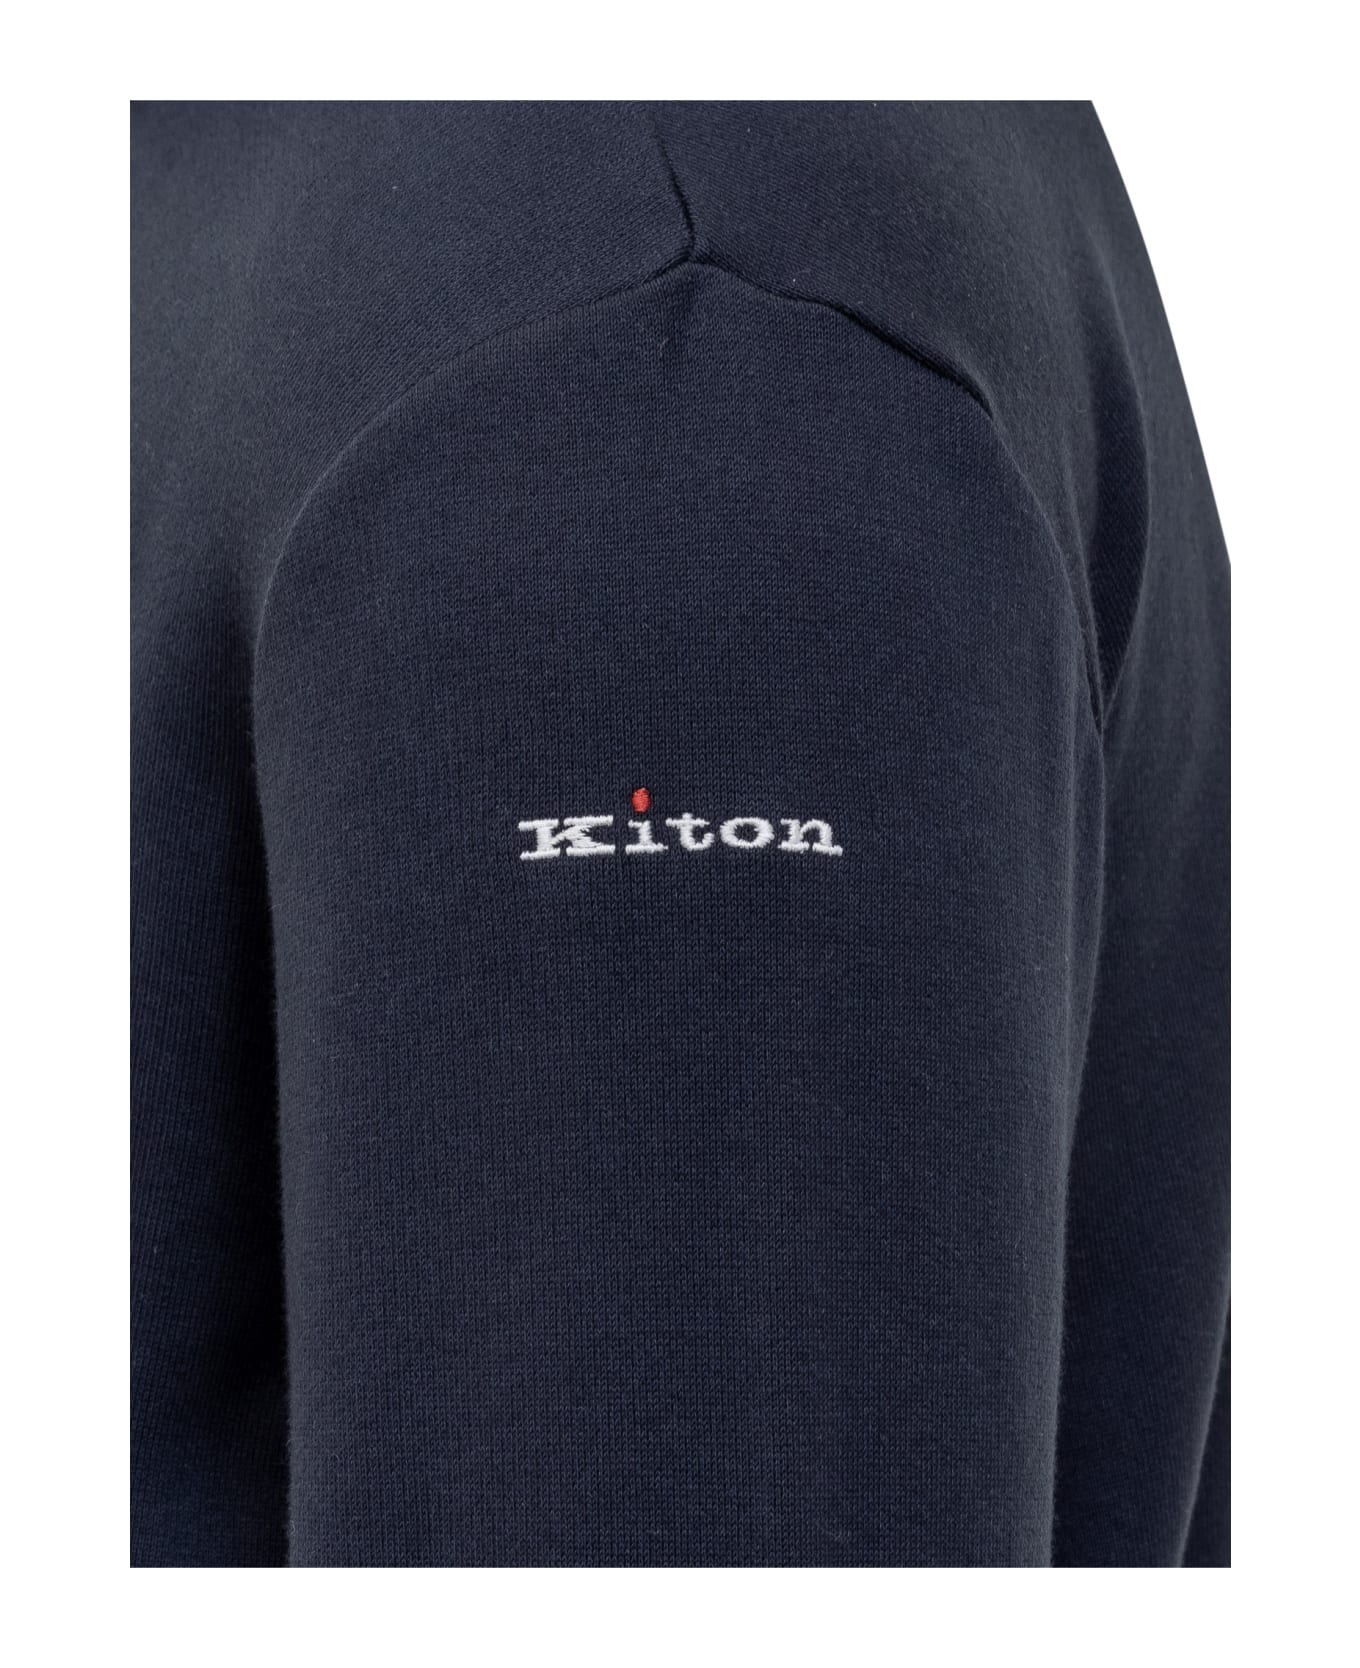 Kiton Cotton Sweatpants Suit - NAVY BLUE